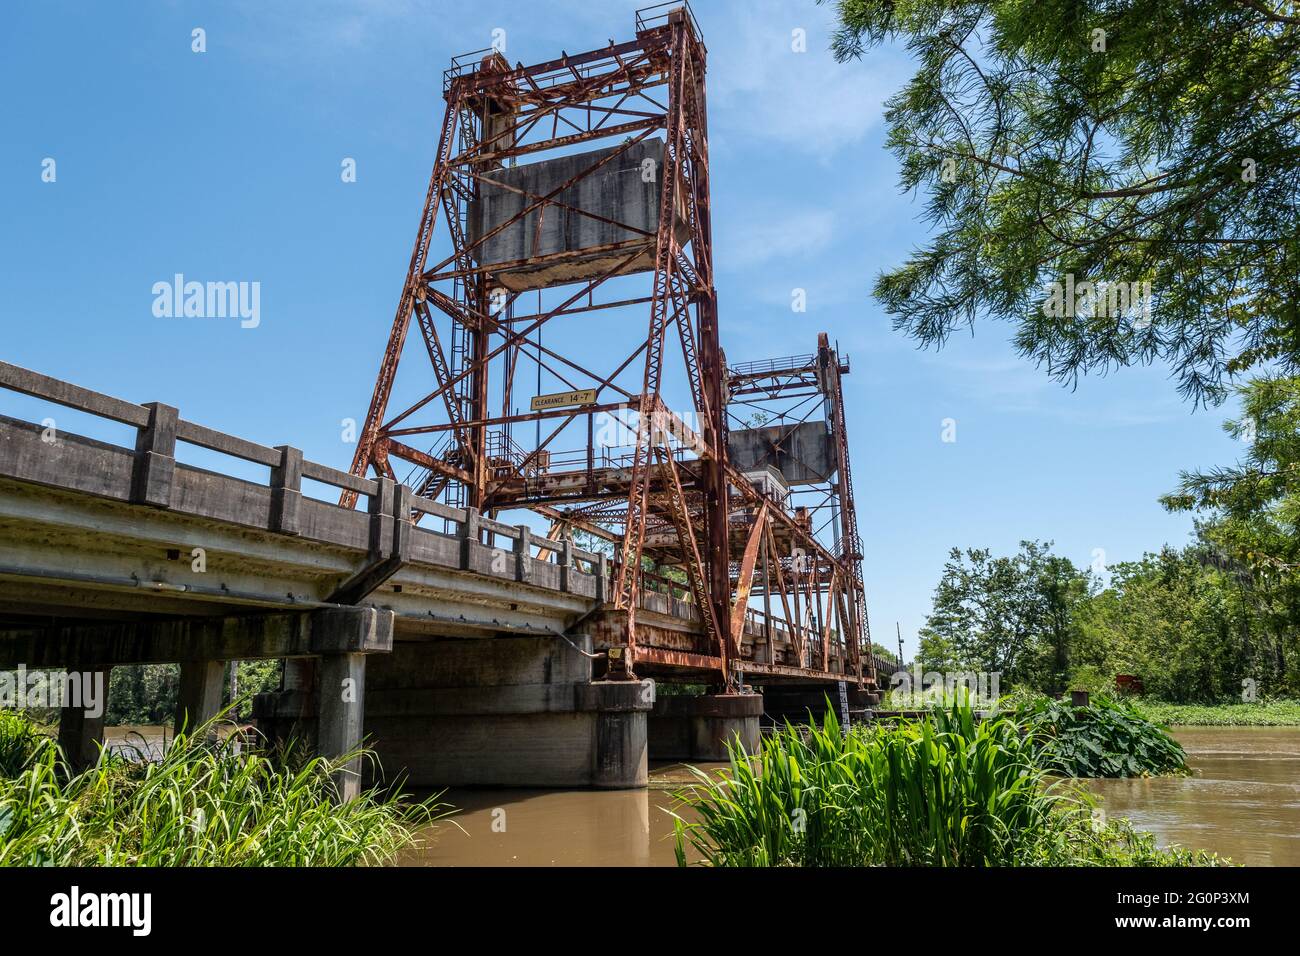 West Pearl River Bridge, construido en 1933, lleva la autopista US 90, Old Spanish Trail que conecta Nueva Orleans con la costa del golfo de Mississippi. Foto de stock